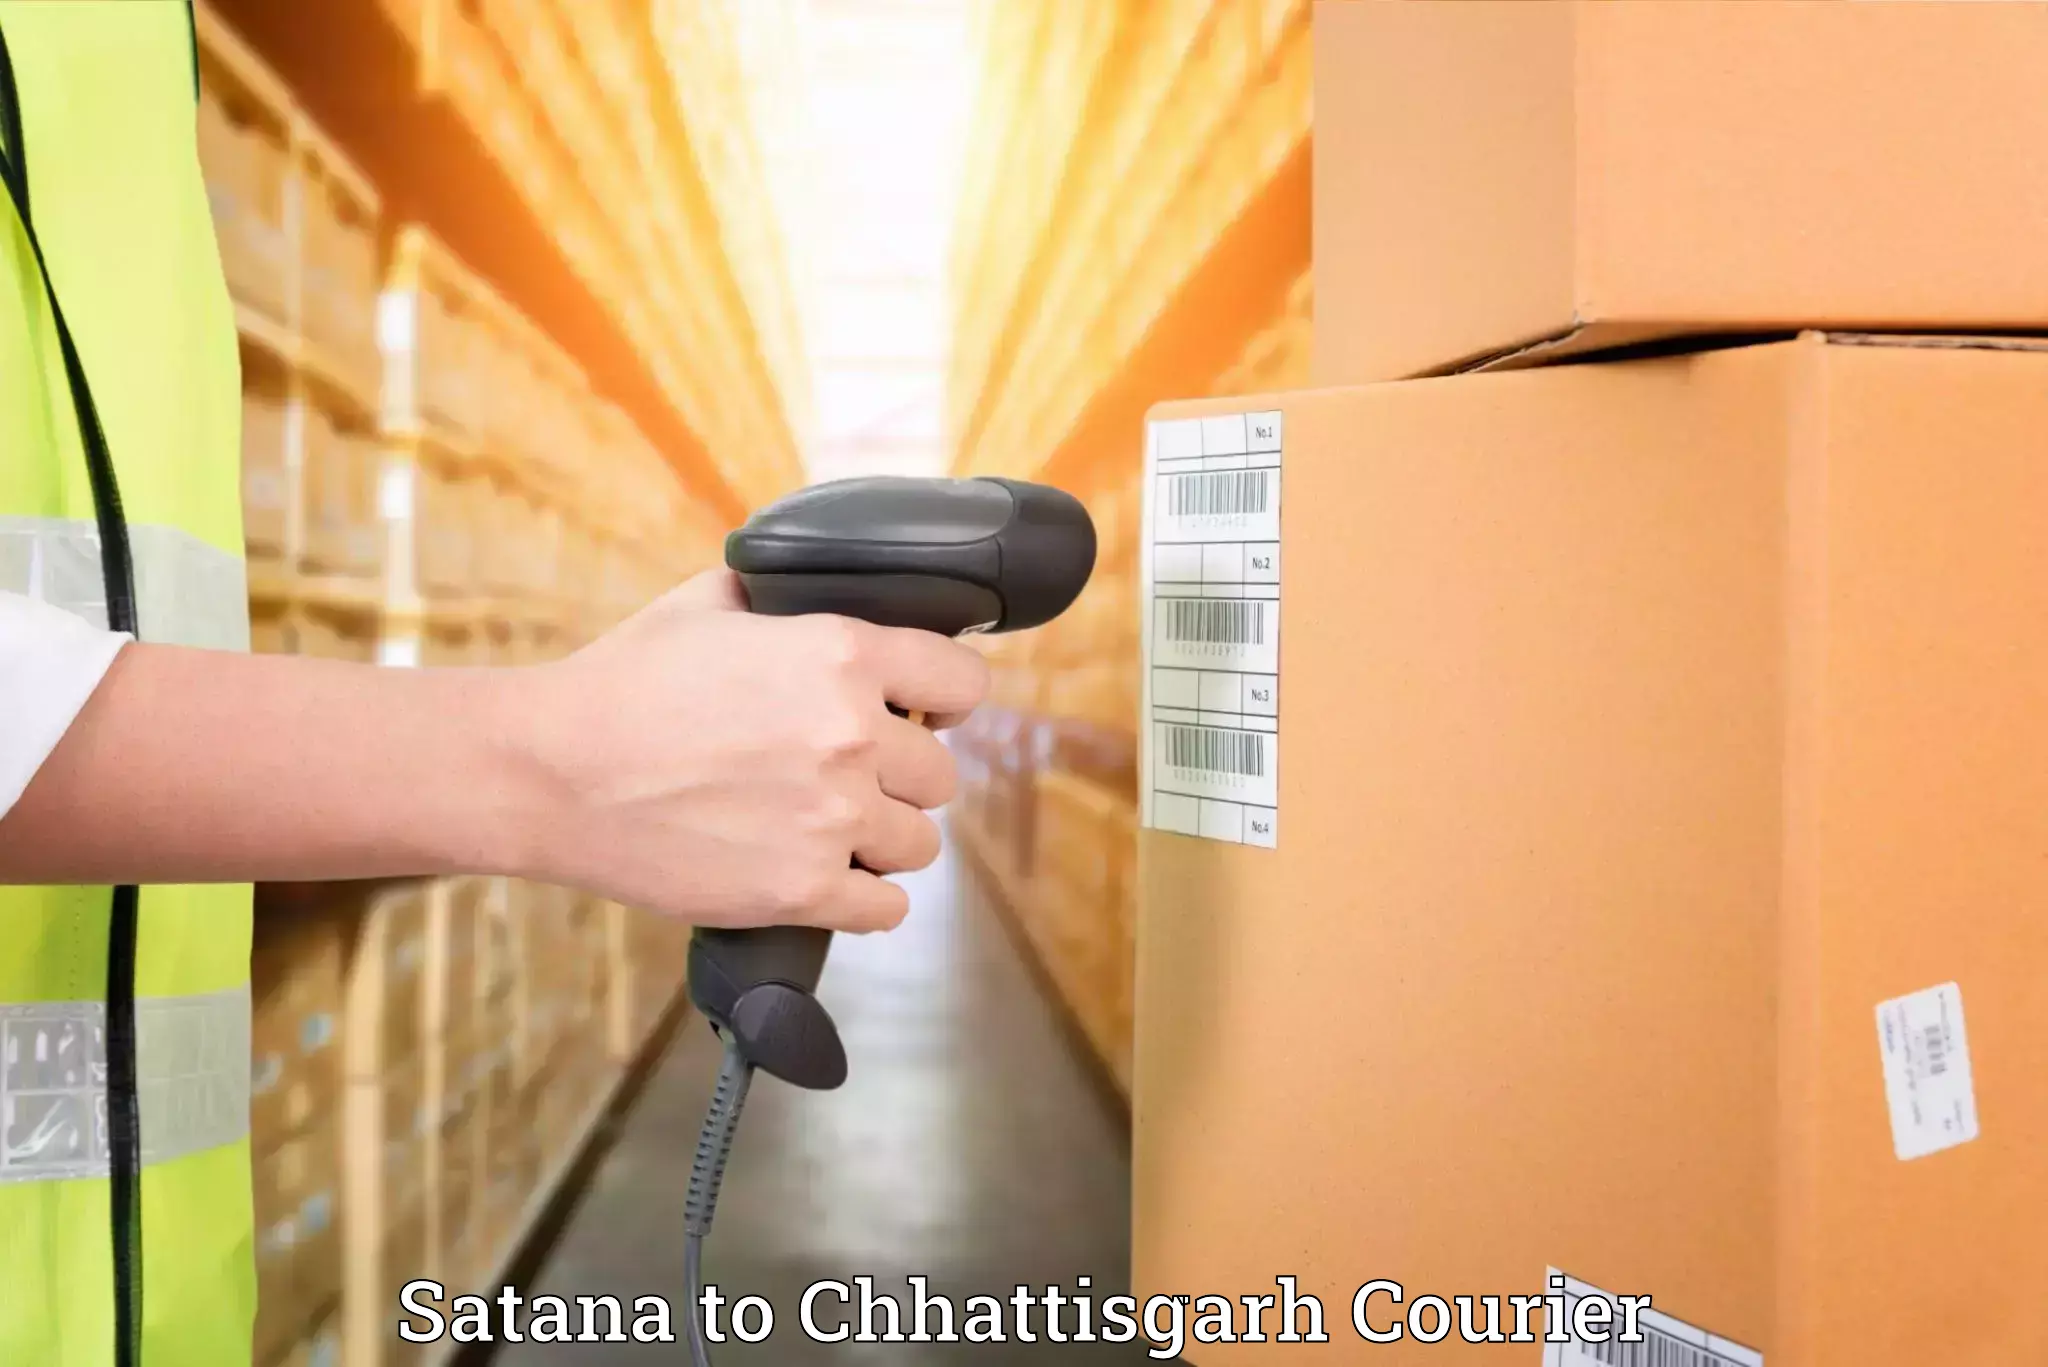 Specialized moving company Satana to Chhattisgarh